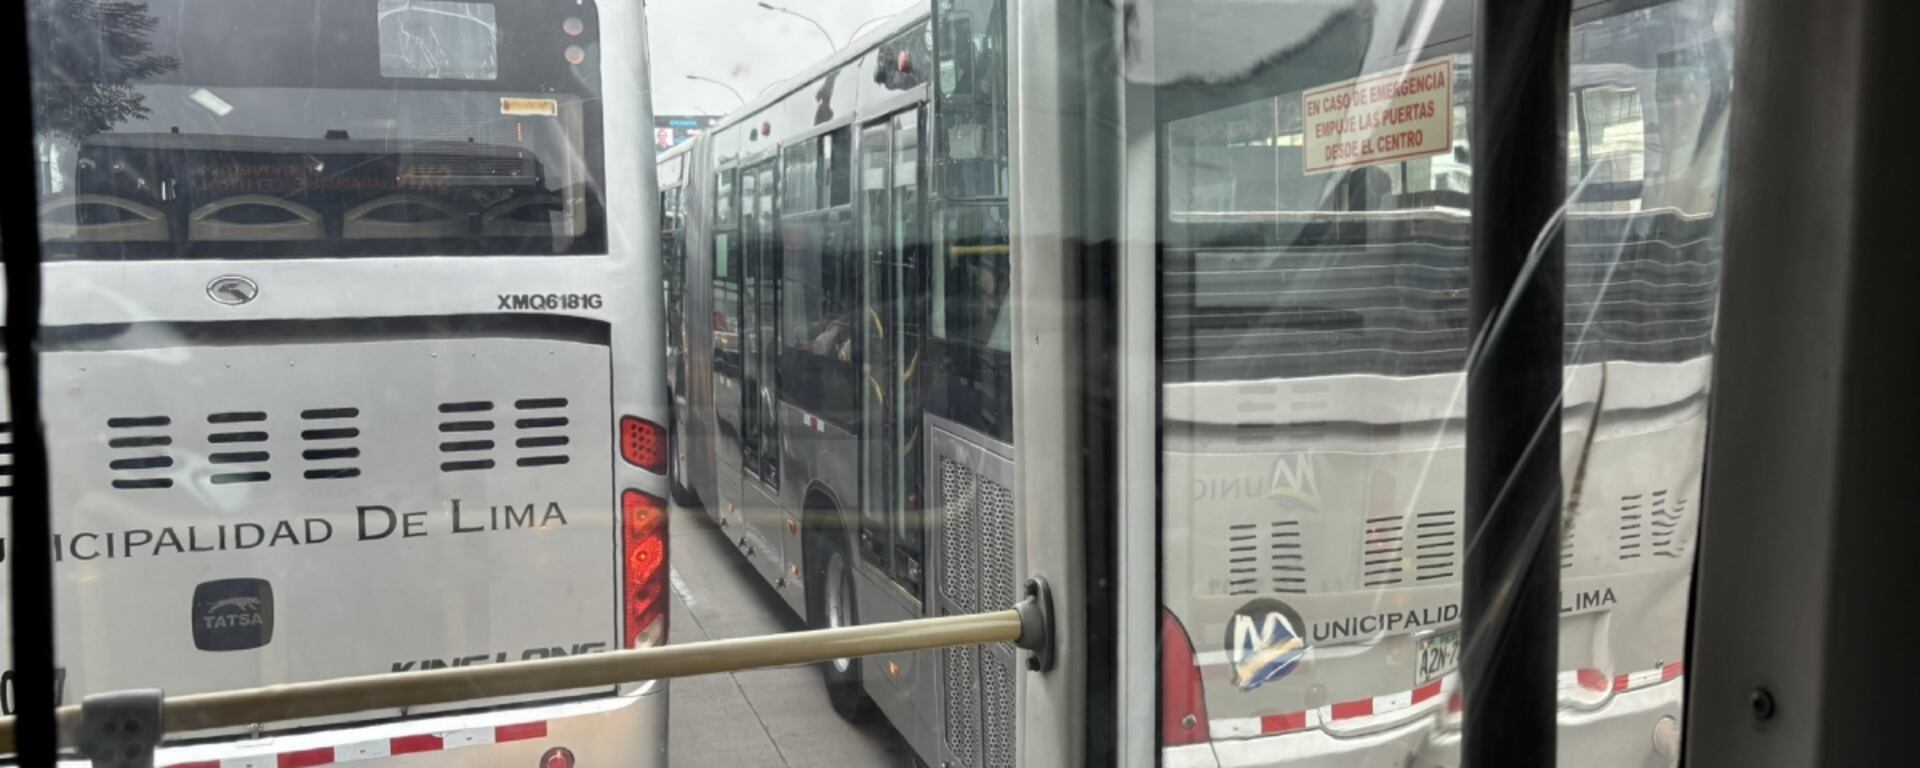 Nueva falla con bus del Metropolitano: 38 % de los usuarios ya esperan más de media hora en situaciones normales